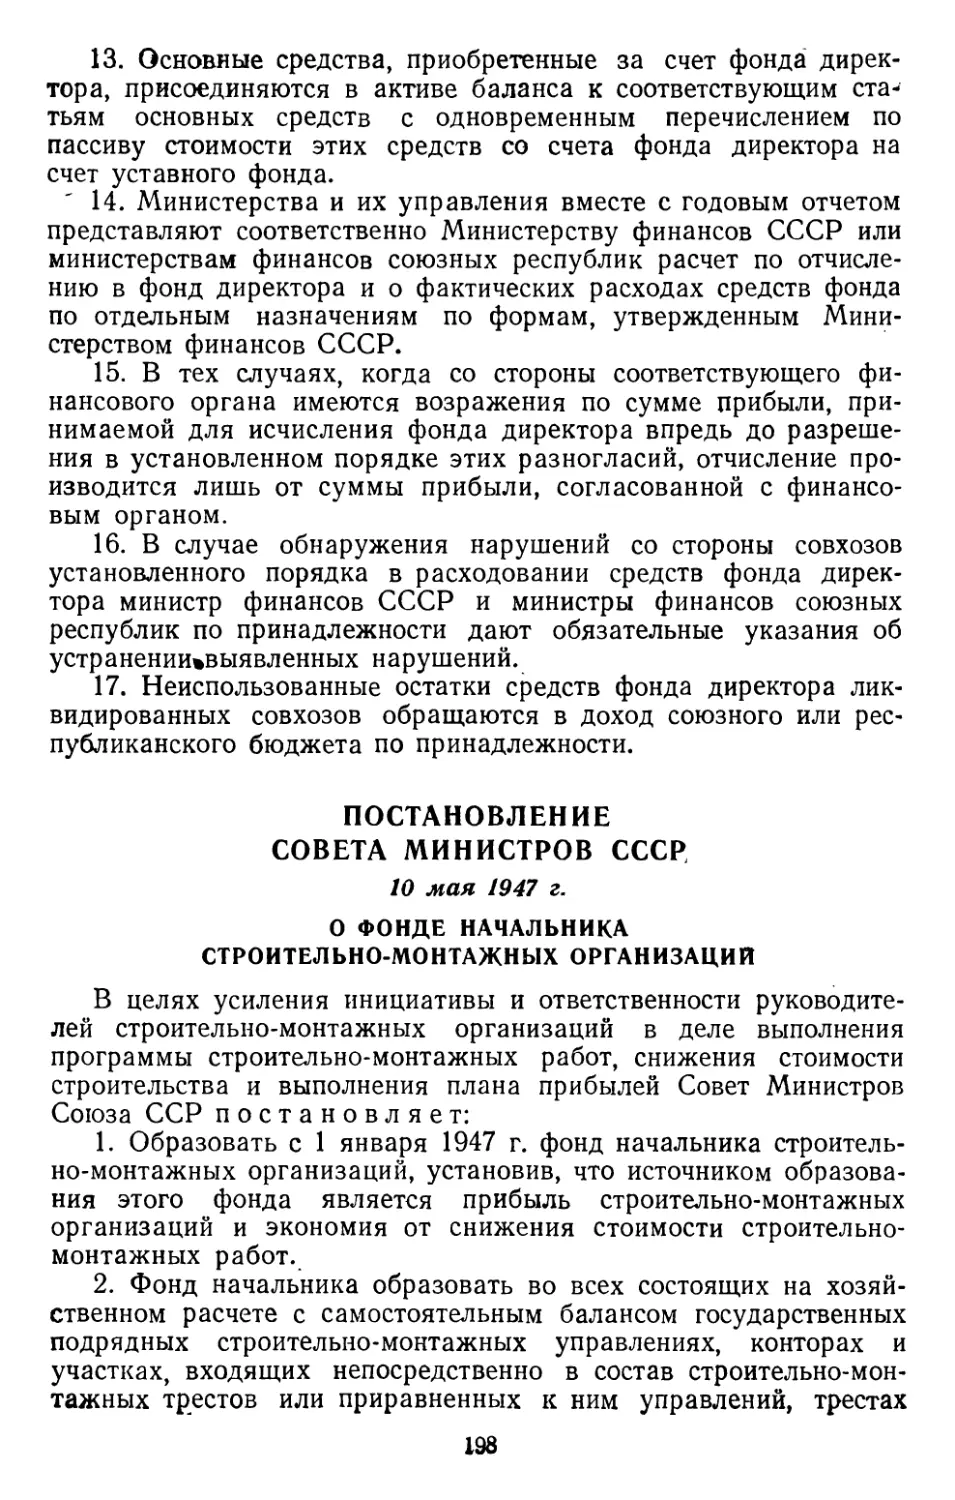 Постановление Совета Министров СССР, 10 мая 1947 г. О фонде начальника строительно-монтажных организаций